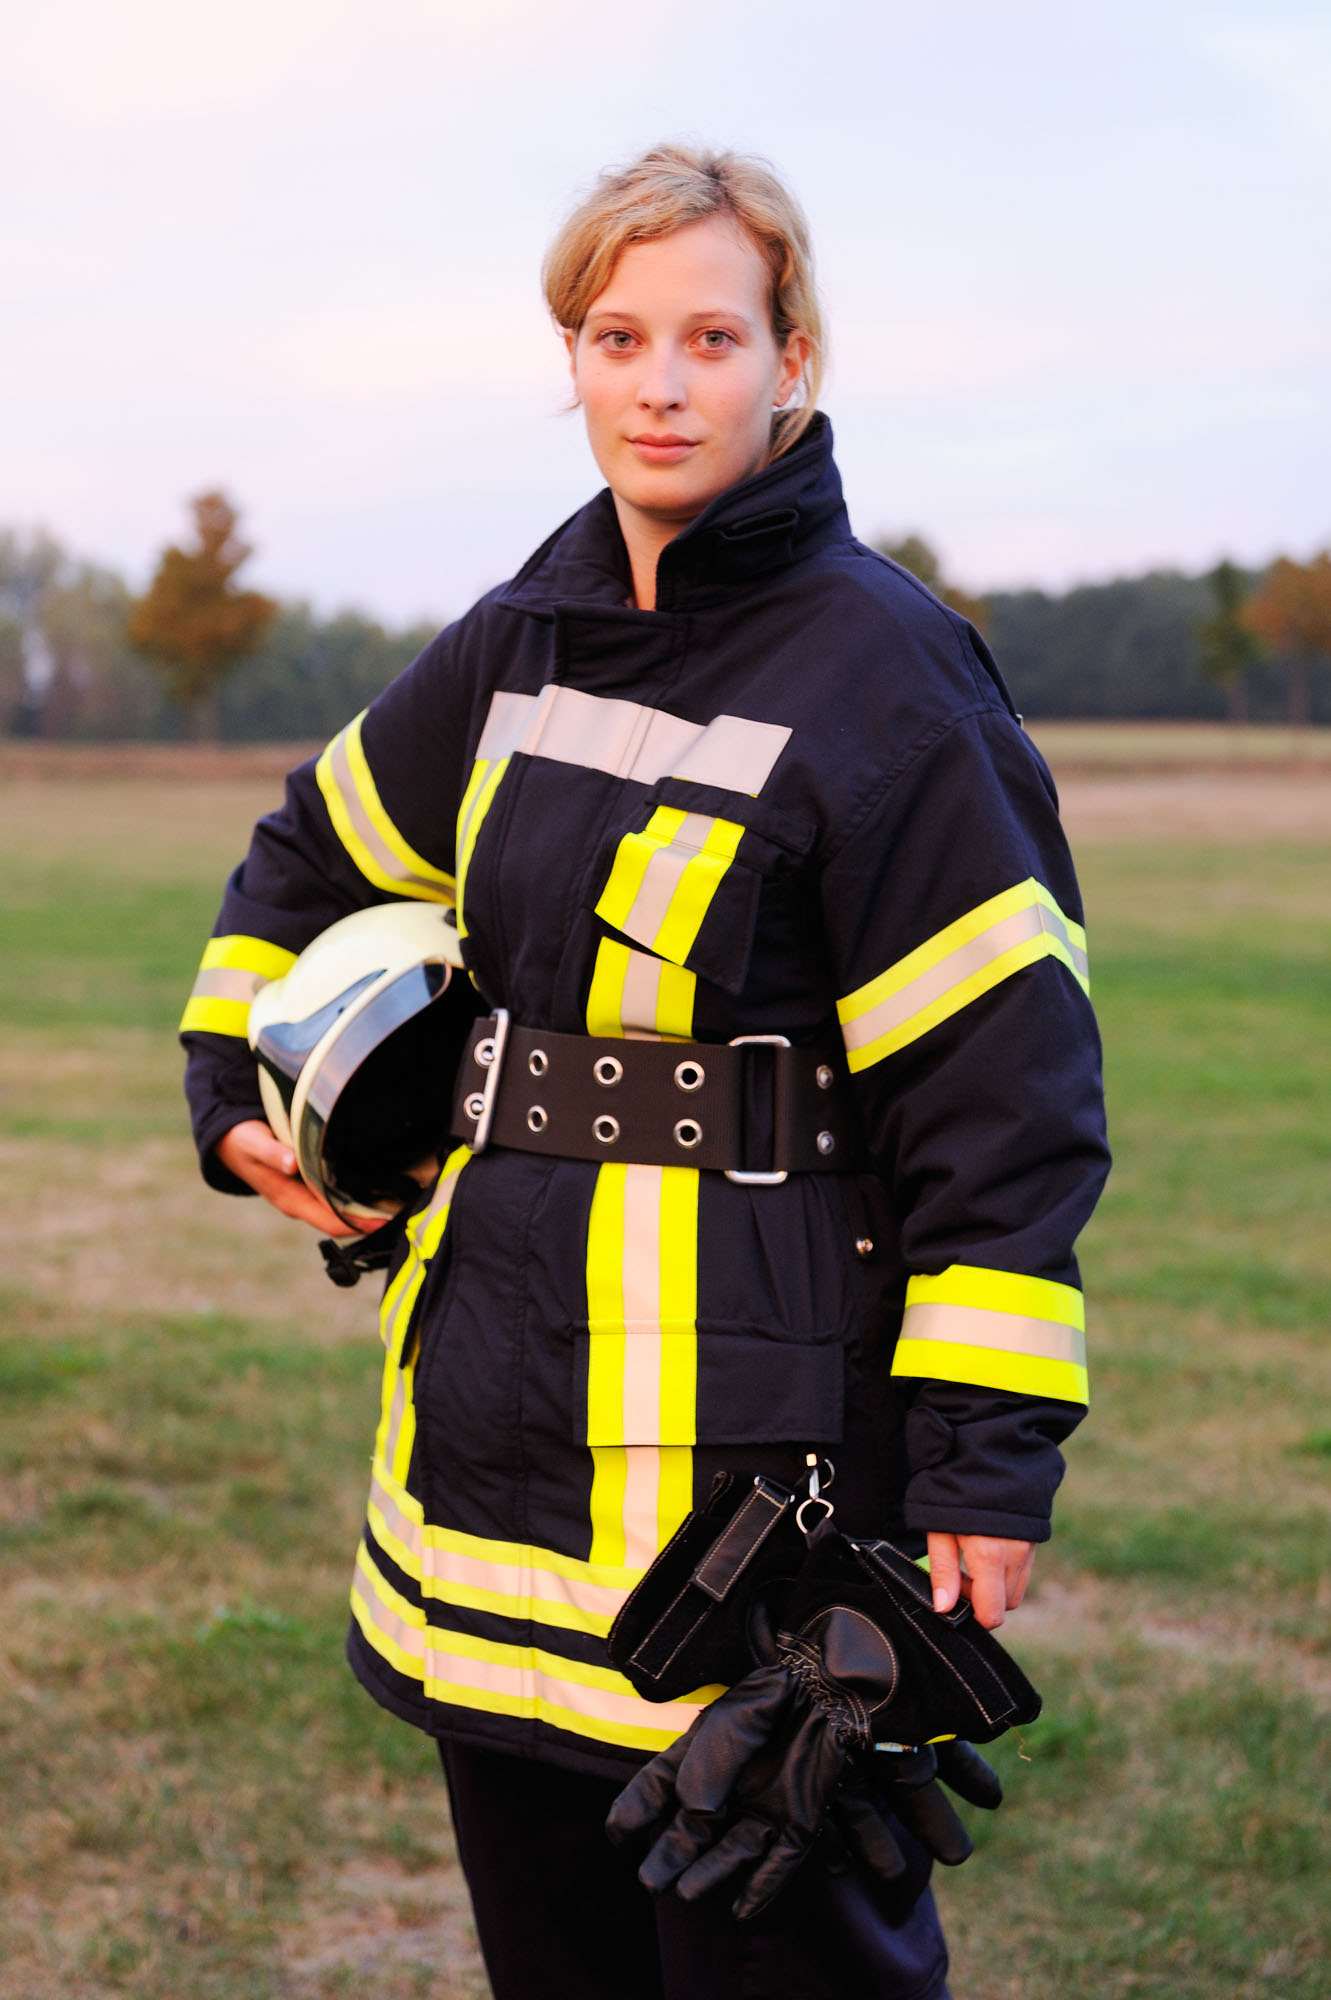 Ariane, Freiwillige Feuerwehr, 2009